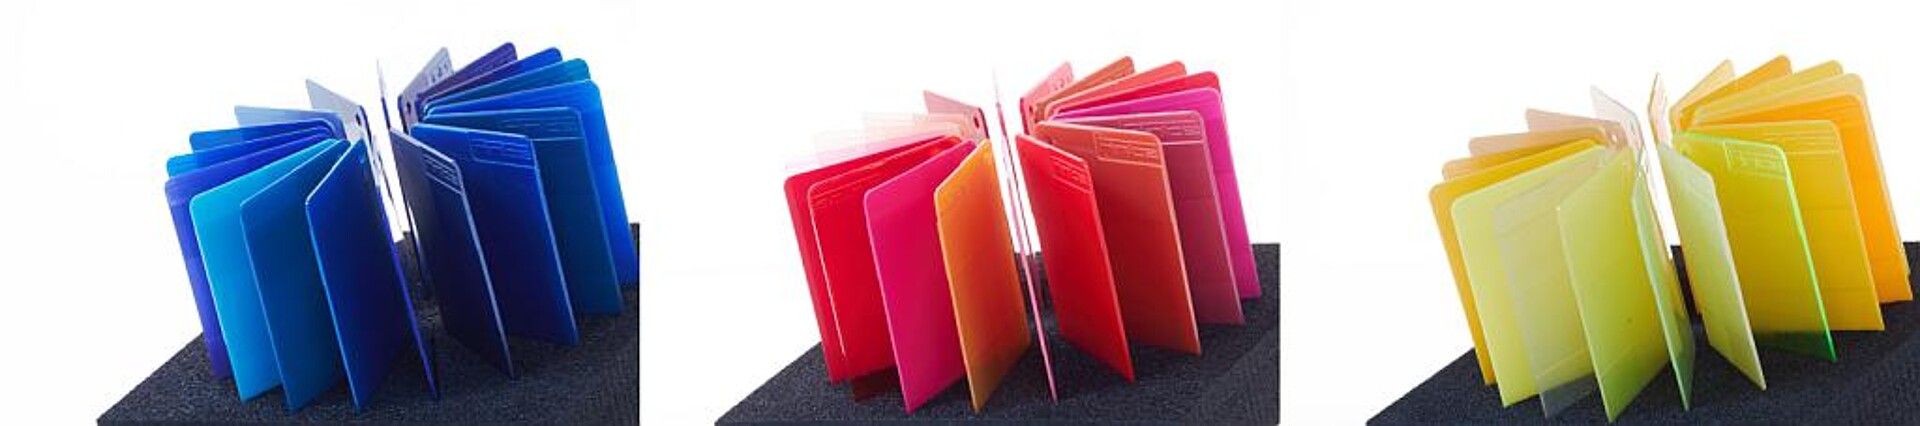 Die Color Inspiration Boxen von Finke sind zu den Farbwelten Rot, Blau und Gelb erhältlich. Eine Box zur Farbwelt Grün soll in Kürze folgen. (Fotos: Finke)